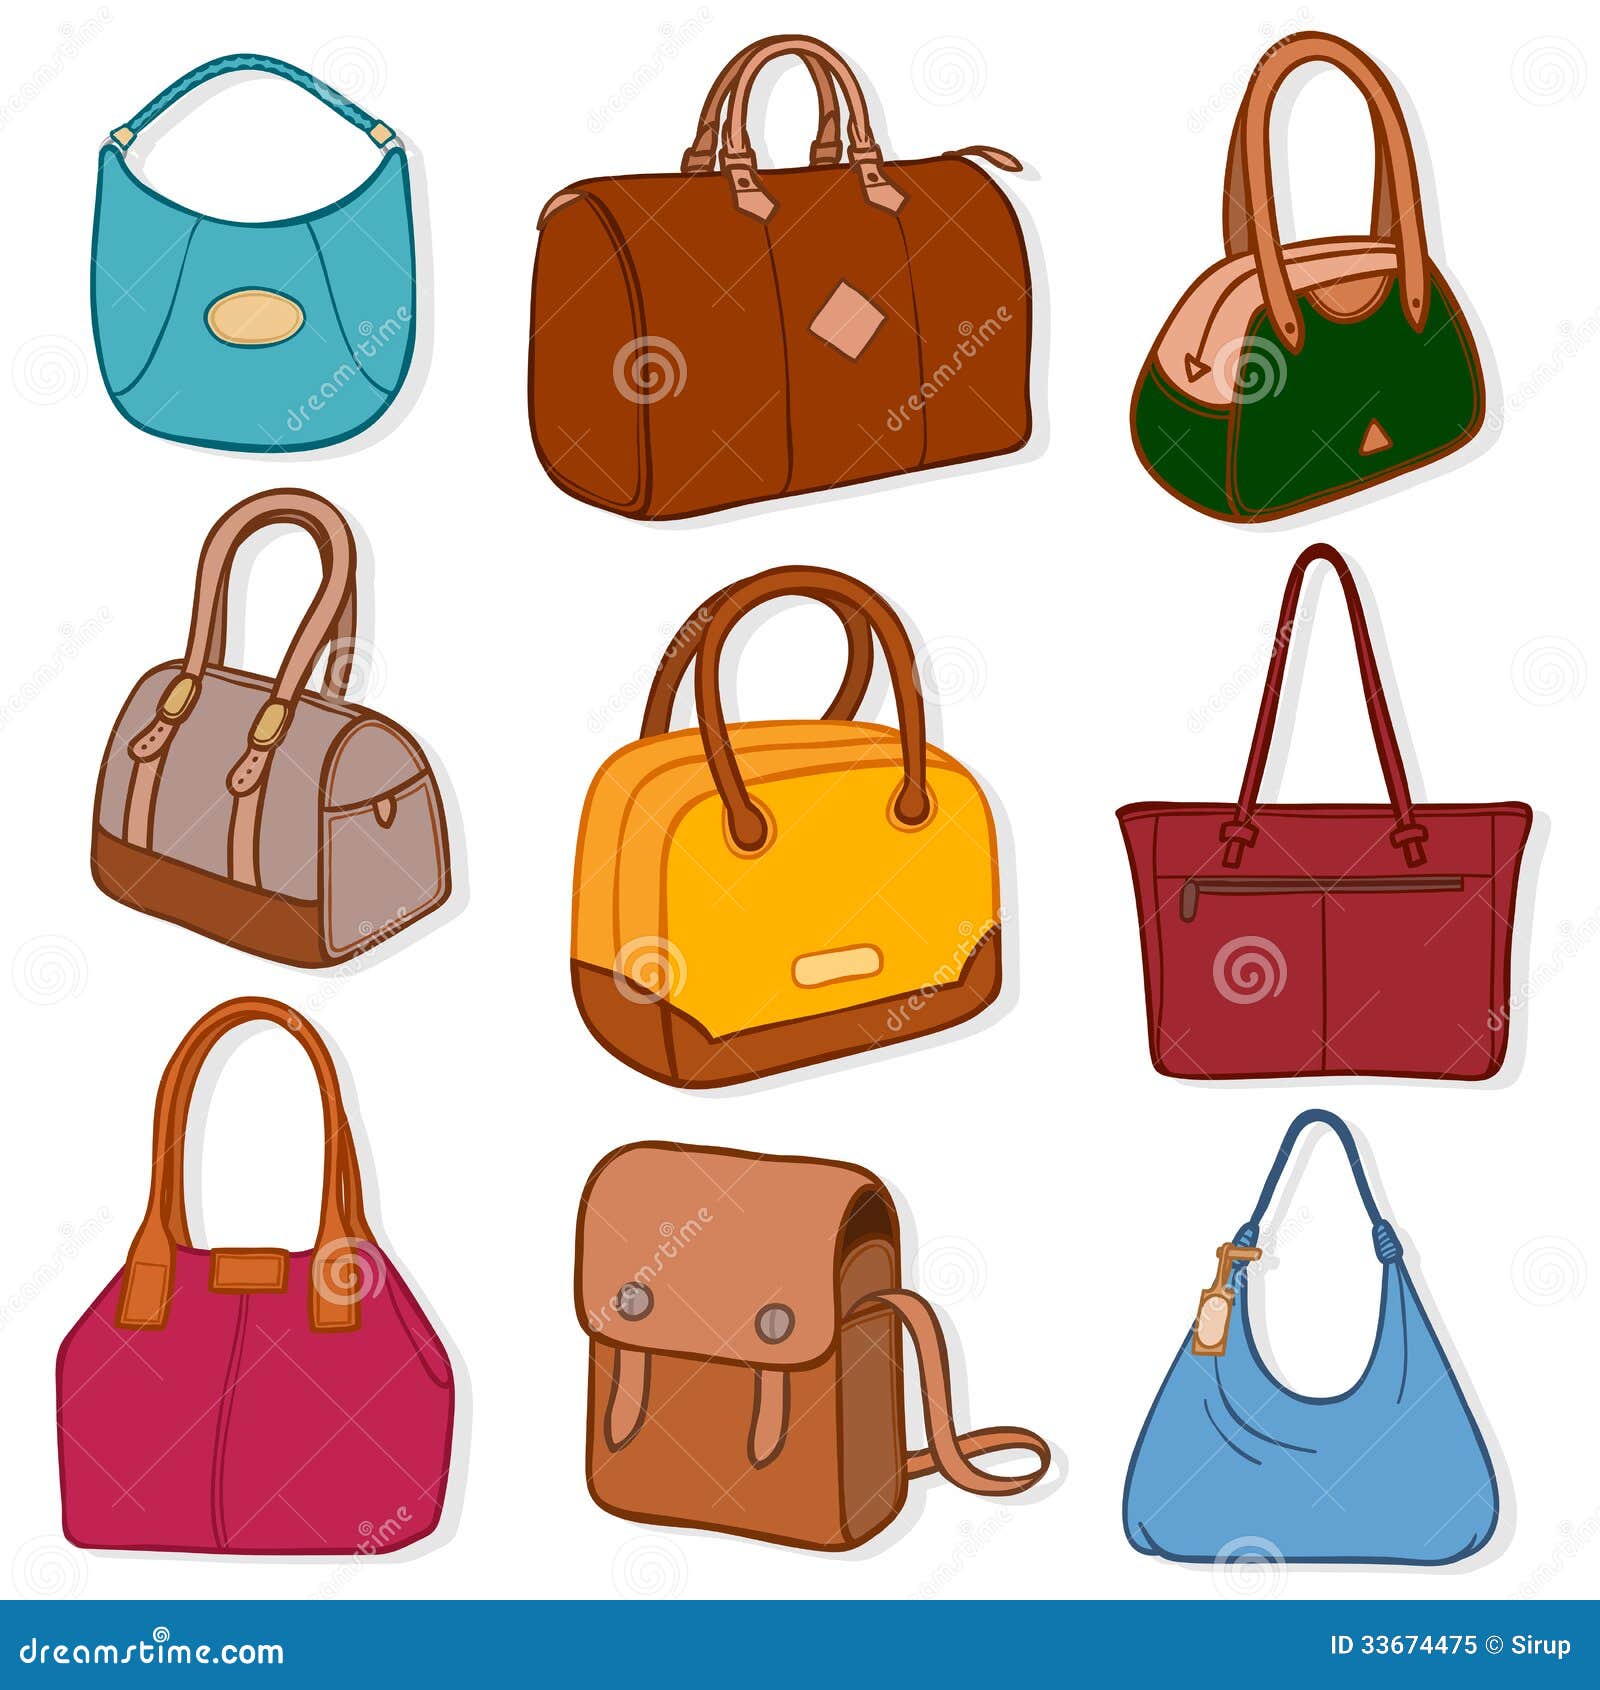 Fall For New | Brahmin handbags, Brahmin purses, Trendy handbags